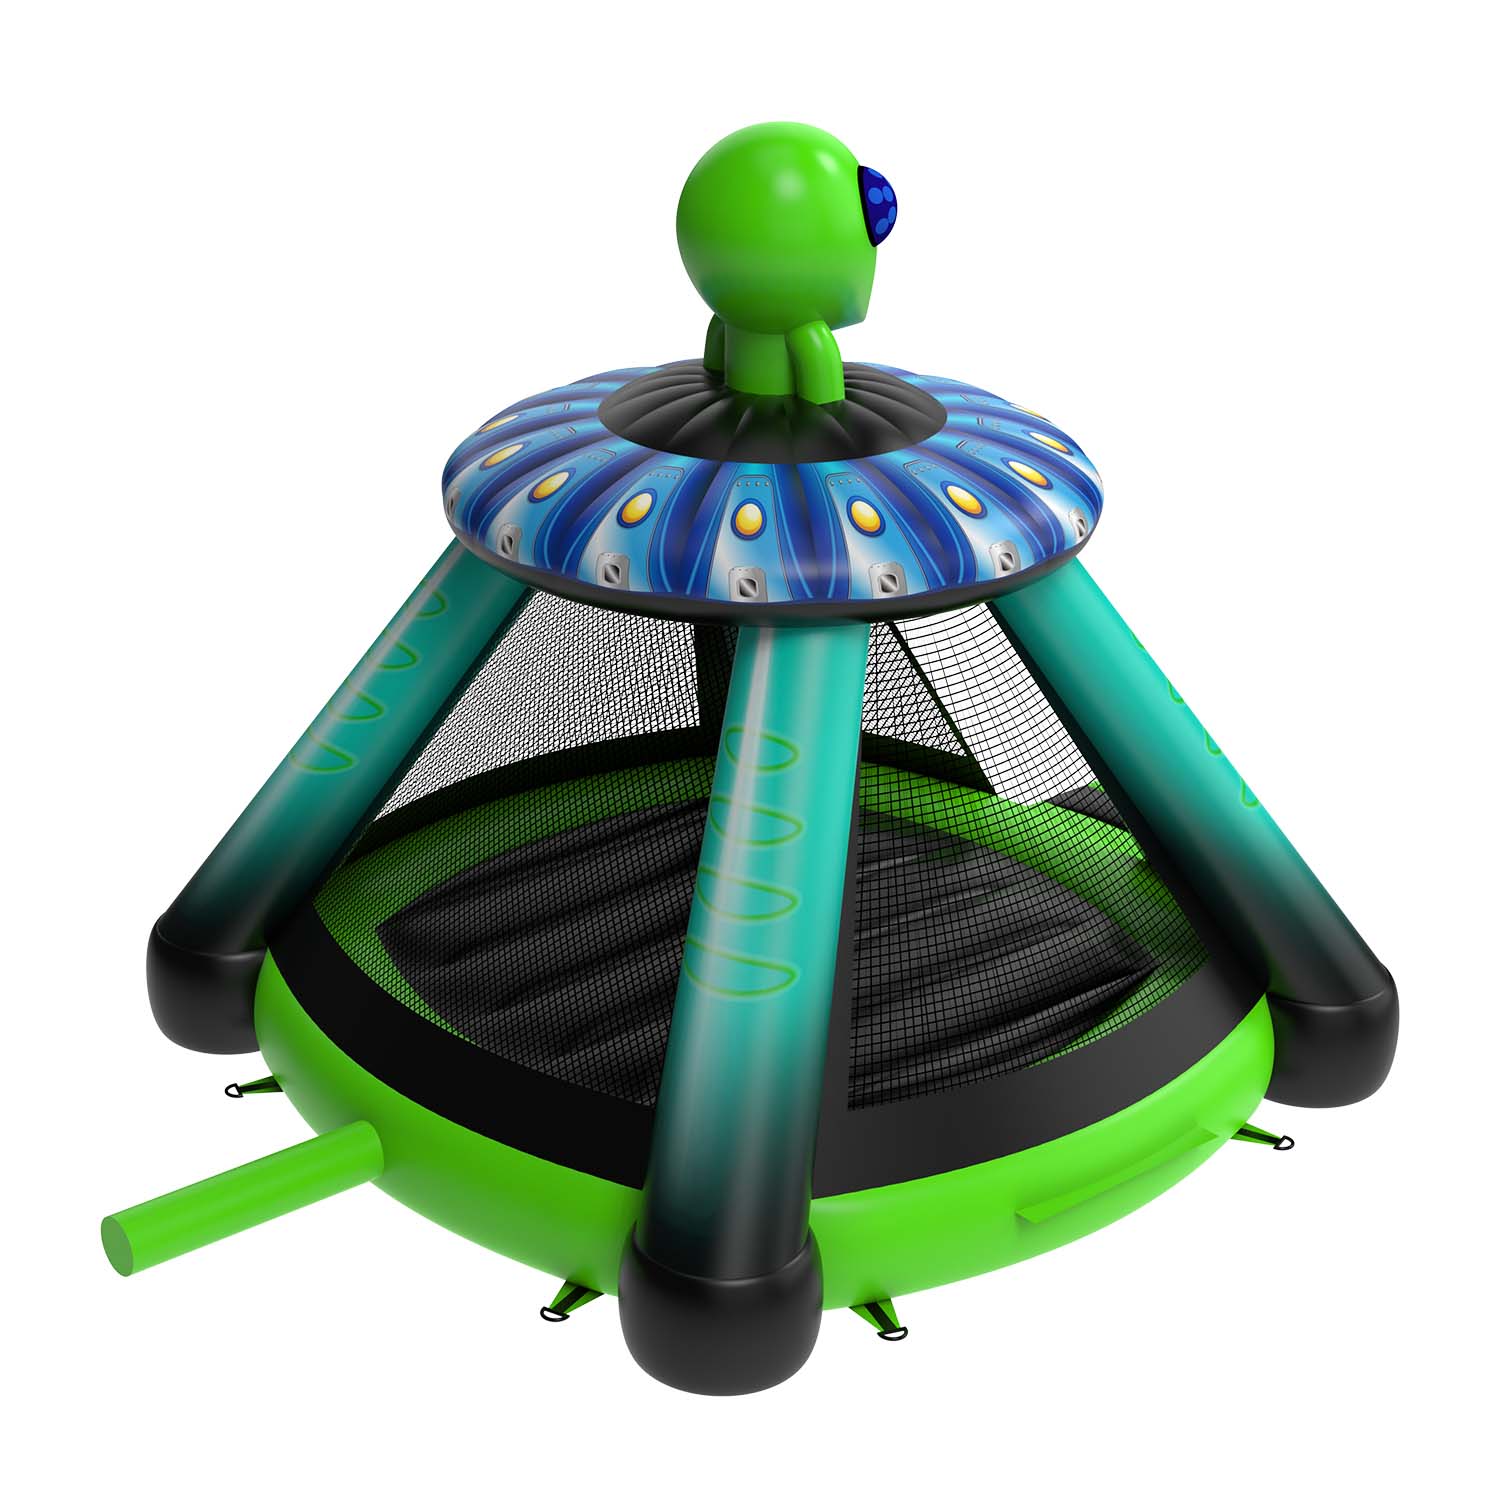 New Design Alien Inflatable Bounce HouseYG-163